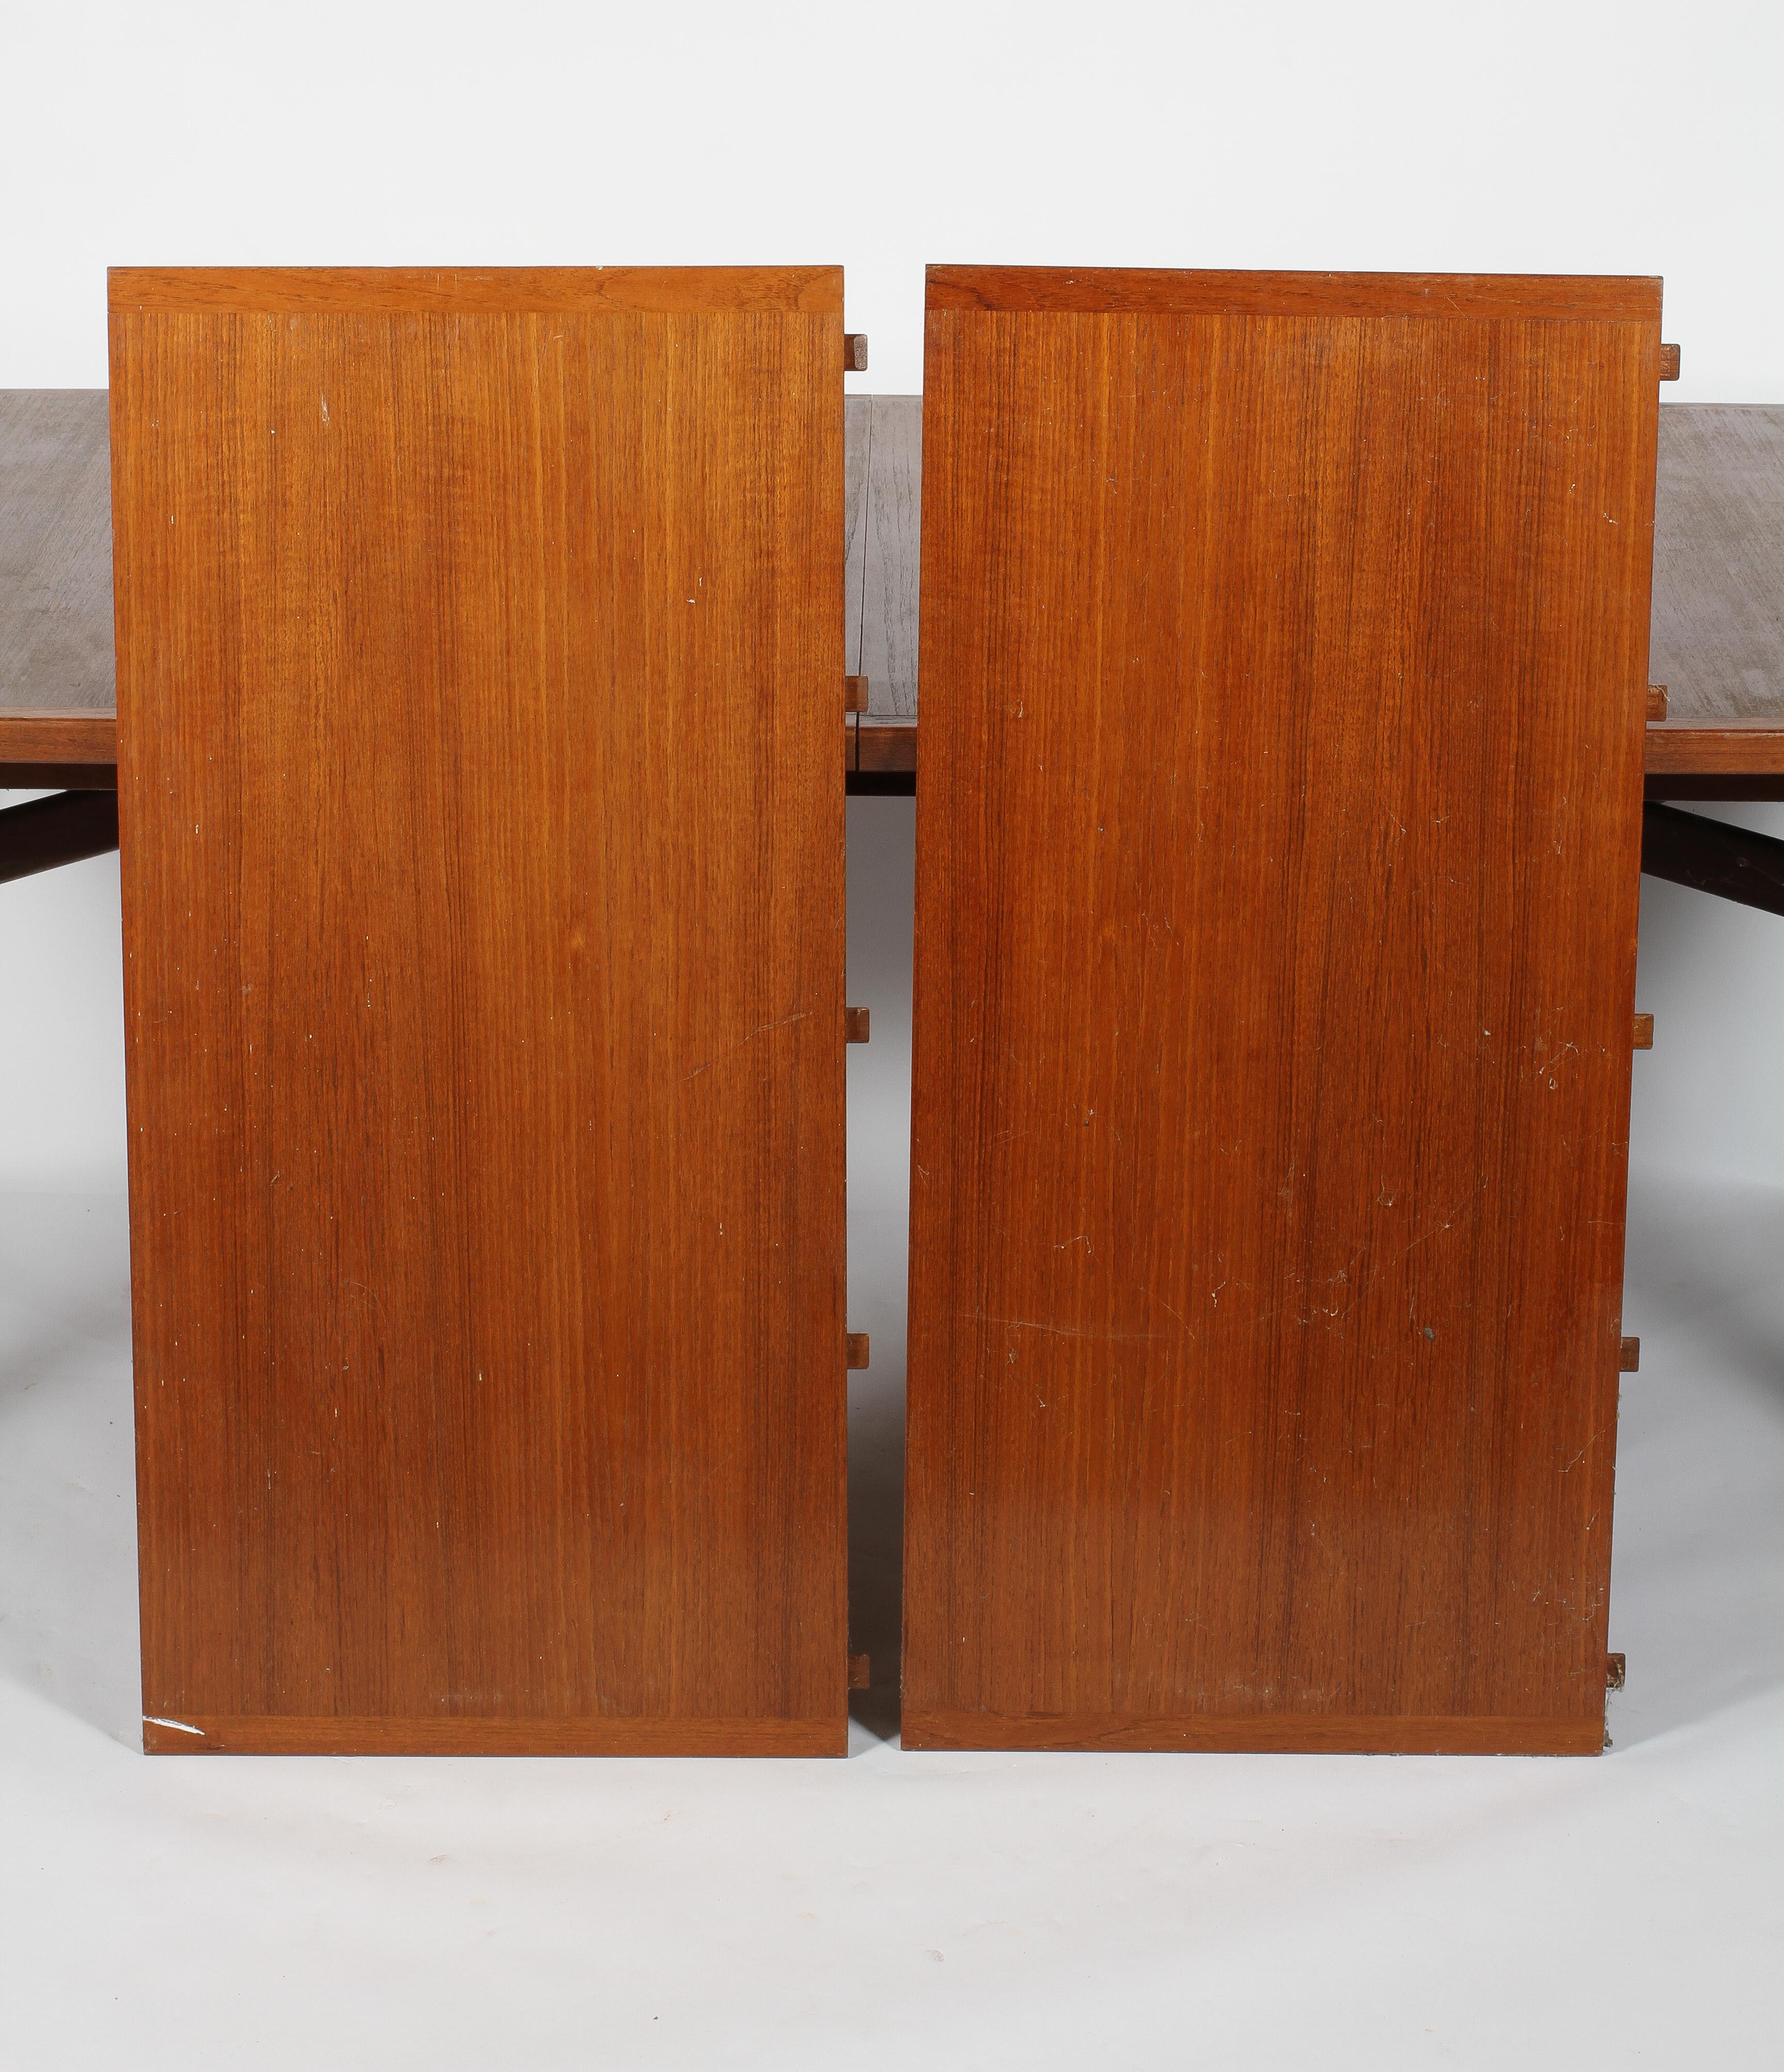 An Arne Vodder for Sibast Mobler teak extending dining table, of bowed rectangular form, - Image 3 of 3